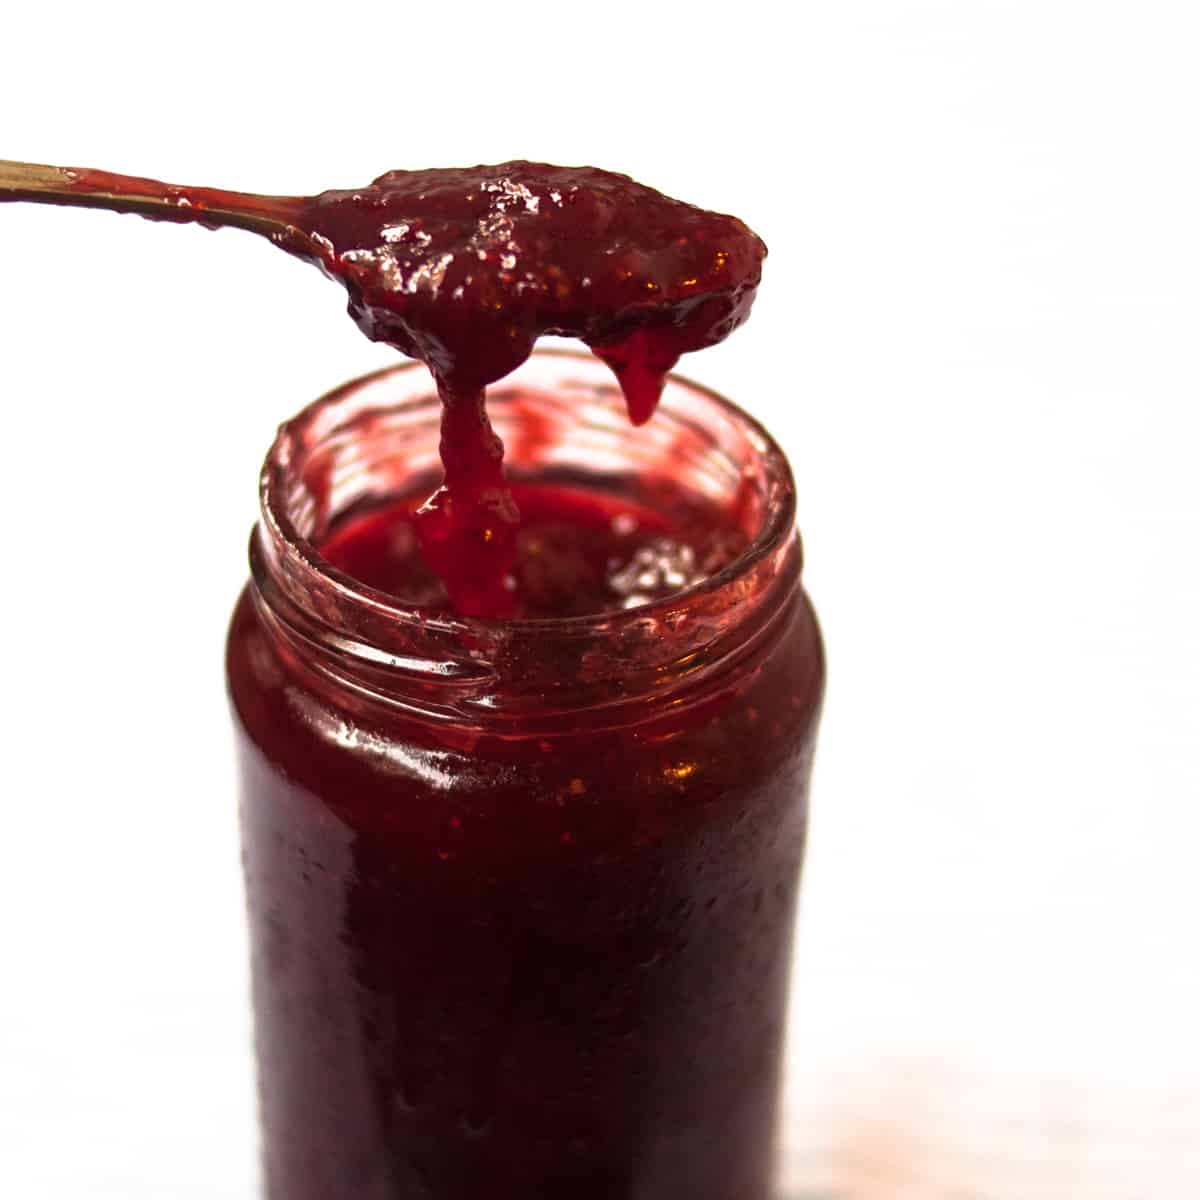 Strawberry Jam without Pectin